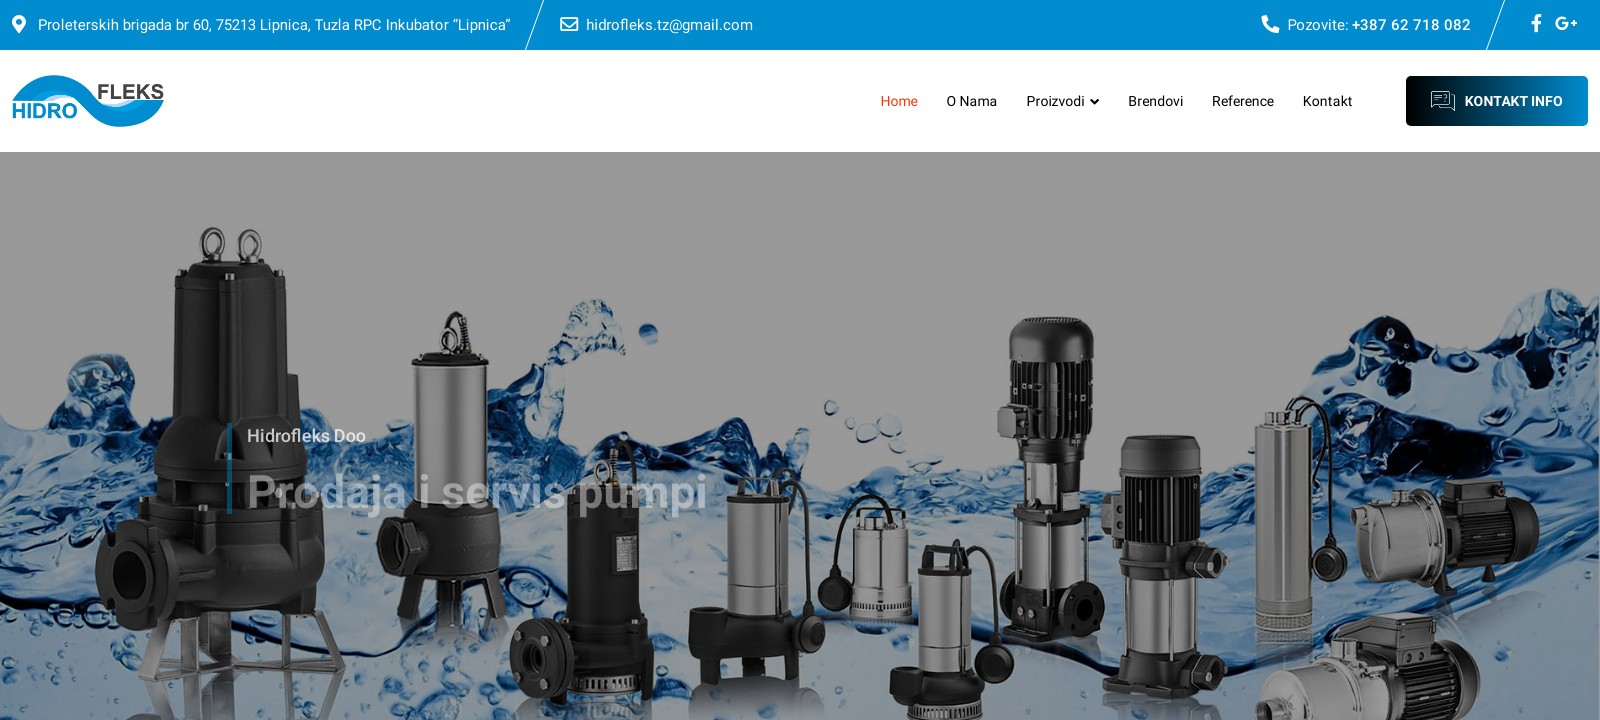 Prodaja i servis pumpi za vodu - Hidrofleks d.o.o.